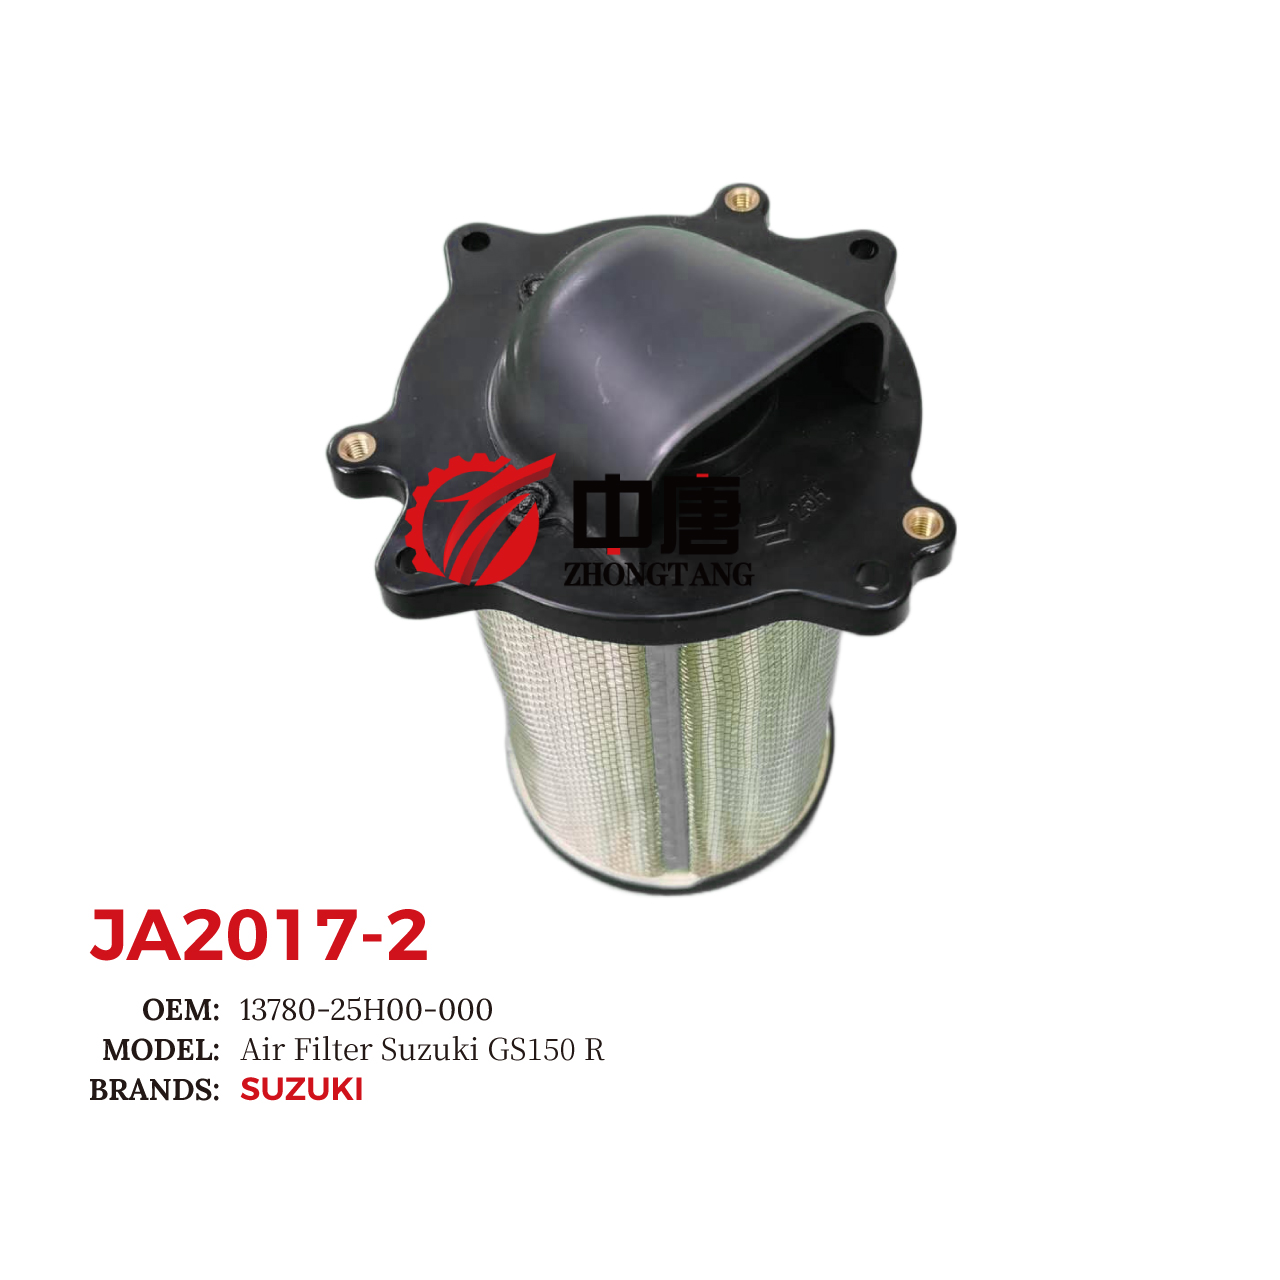 images/JA2017-2/JA2017-2_ZT_4.jpg